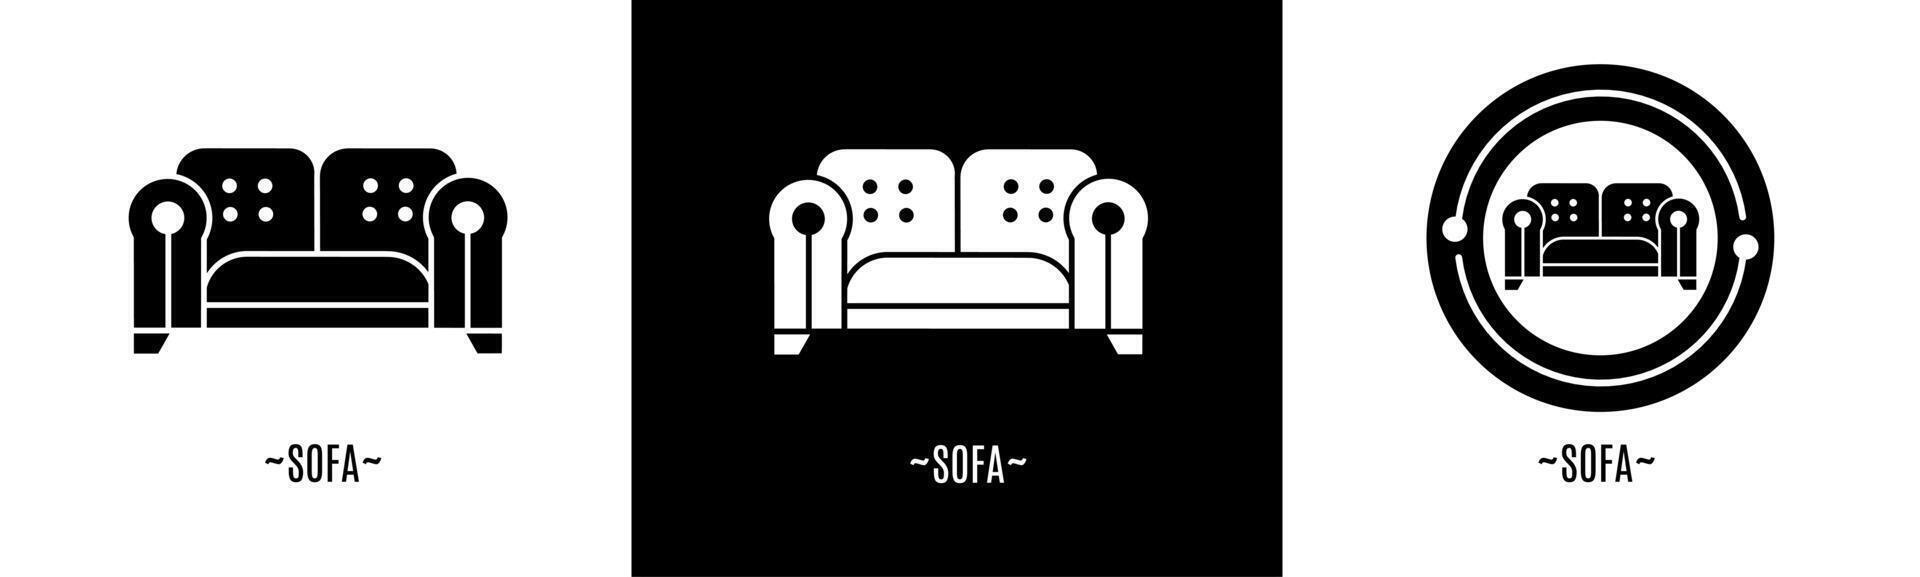 Sofa logo set. Collection of black and white logos. Stock vector. vector